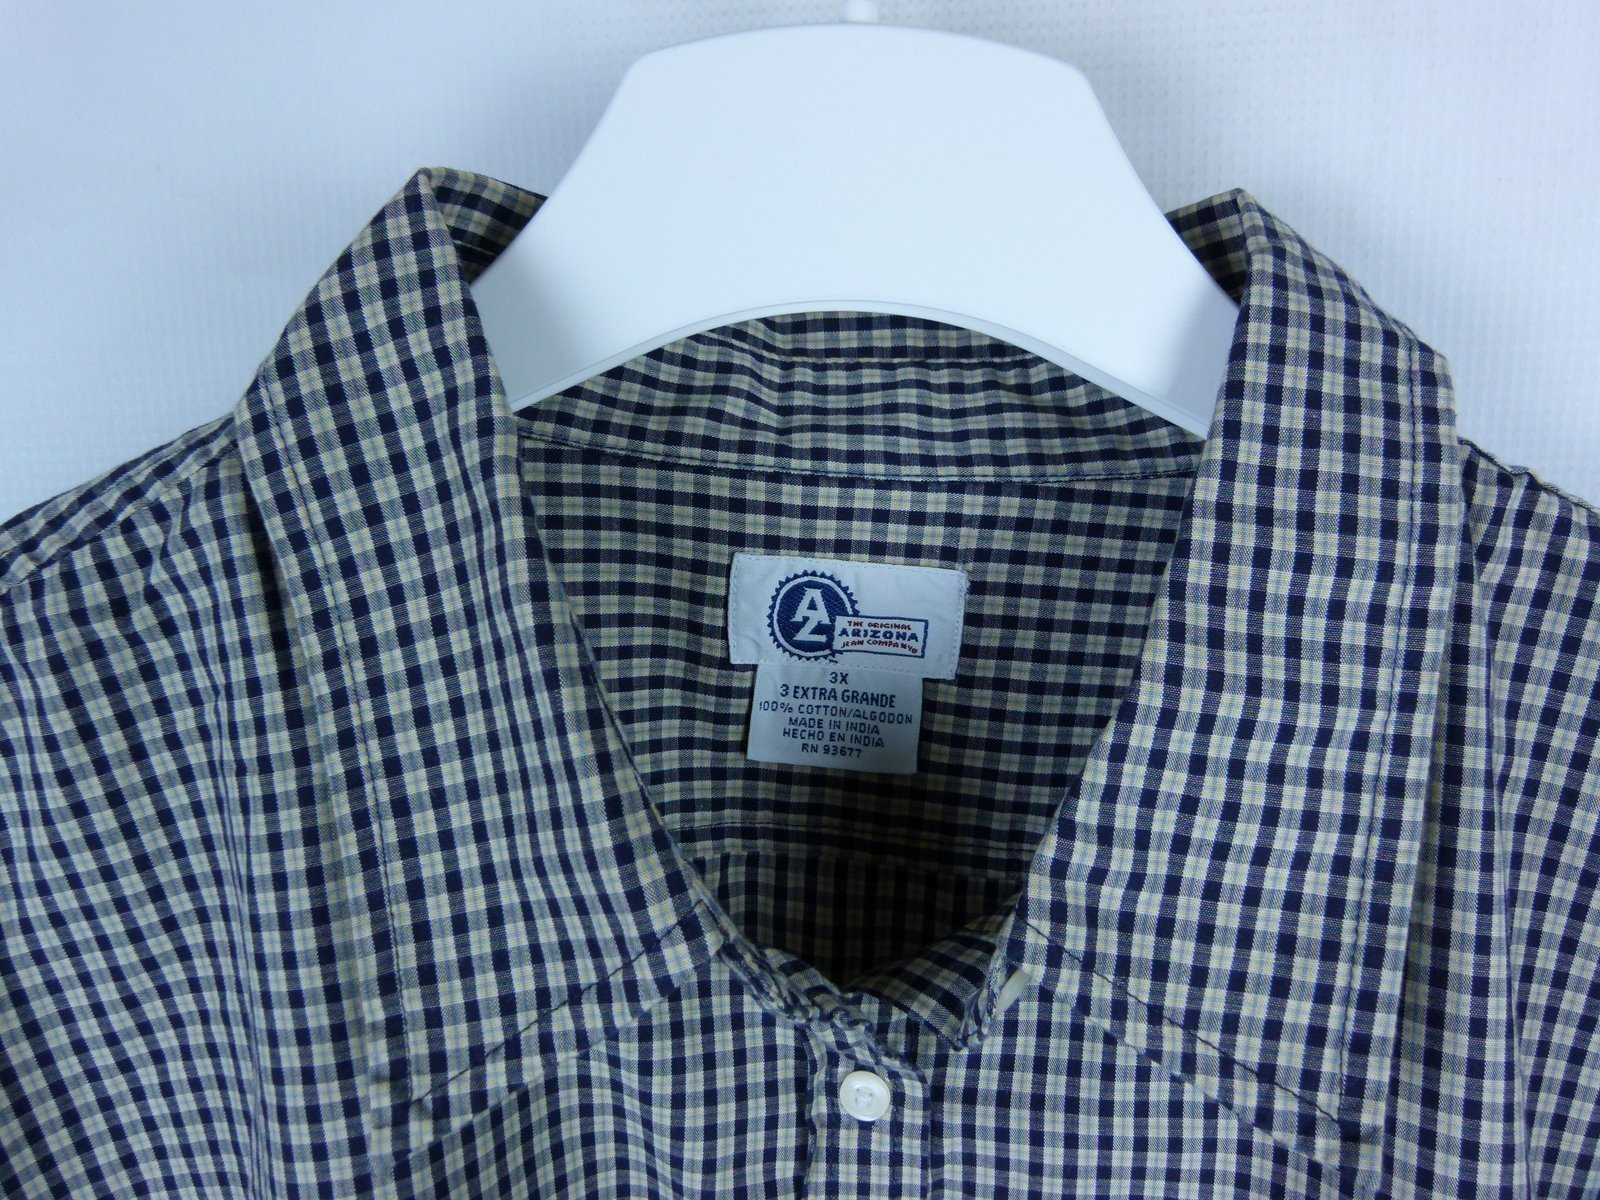 Arizona koszulowa bluzka koszula krateczka bawełna / 3XL